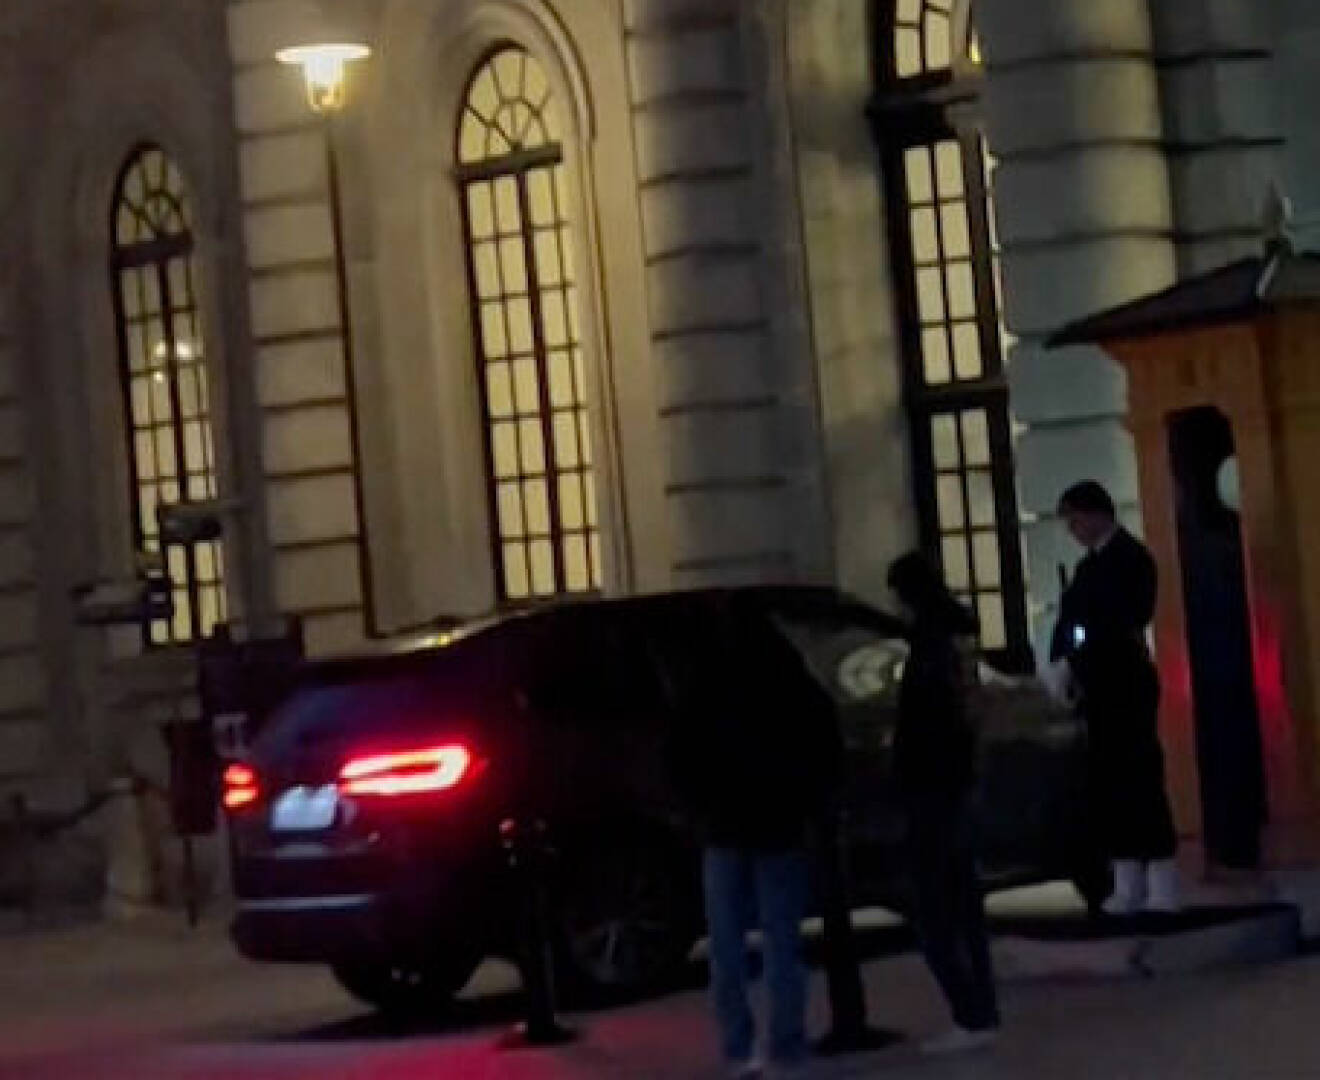 E-Types BMW kör in på Stockholms slott inför prins Daniels 50-årsfest